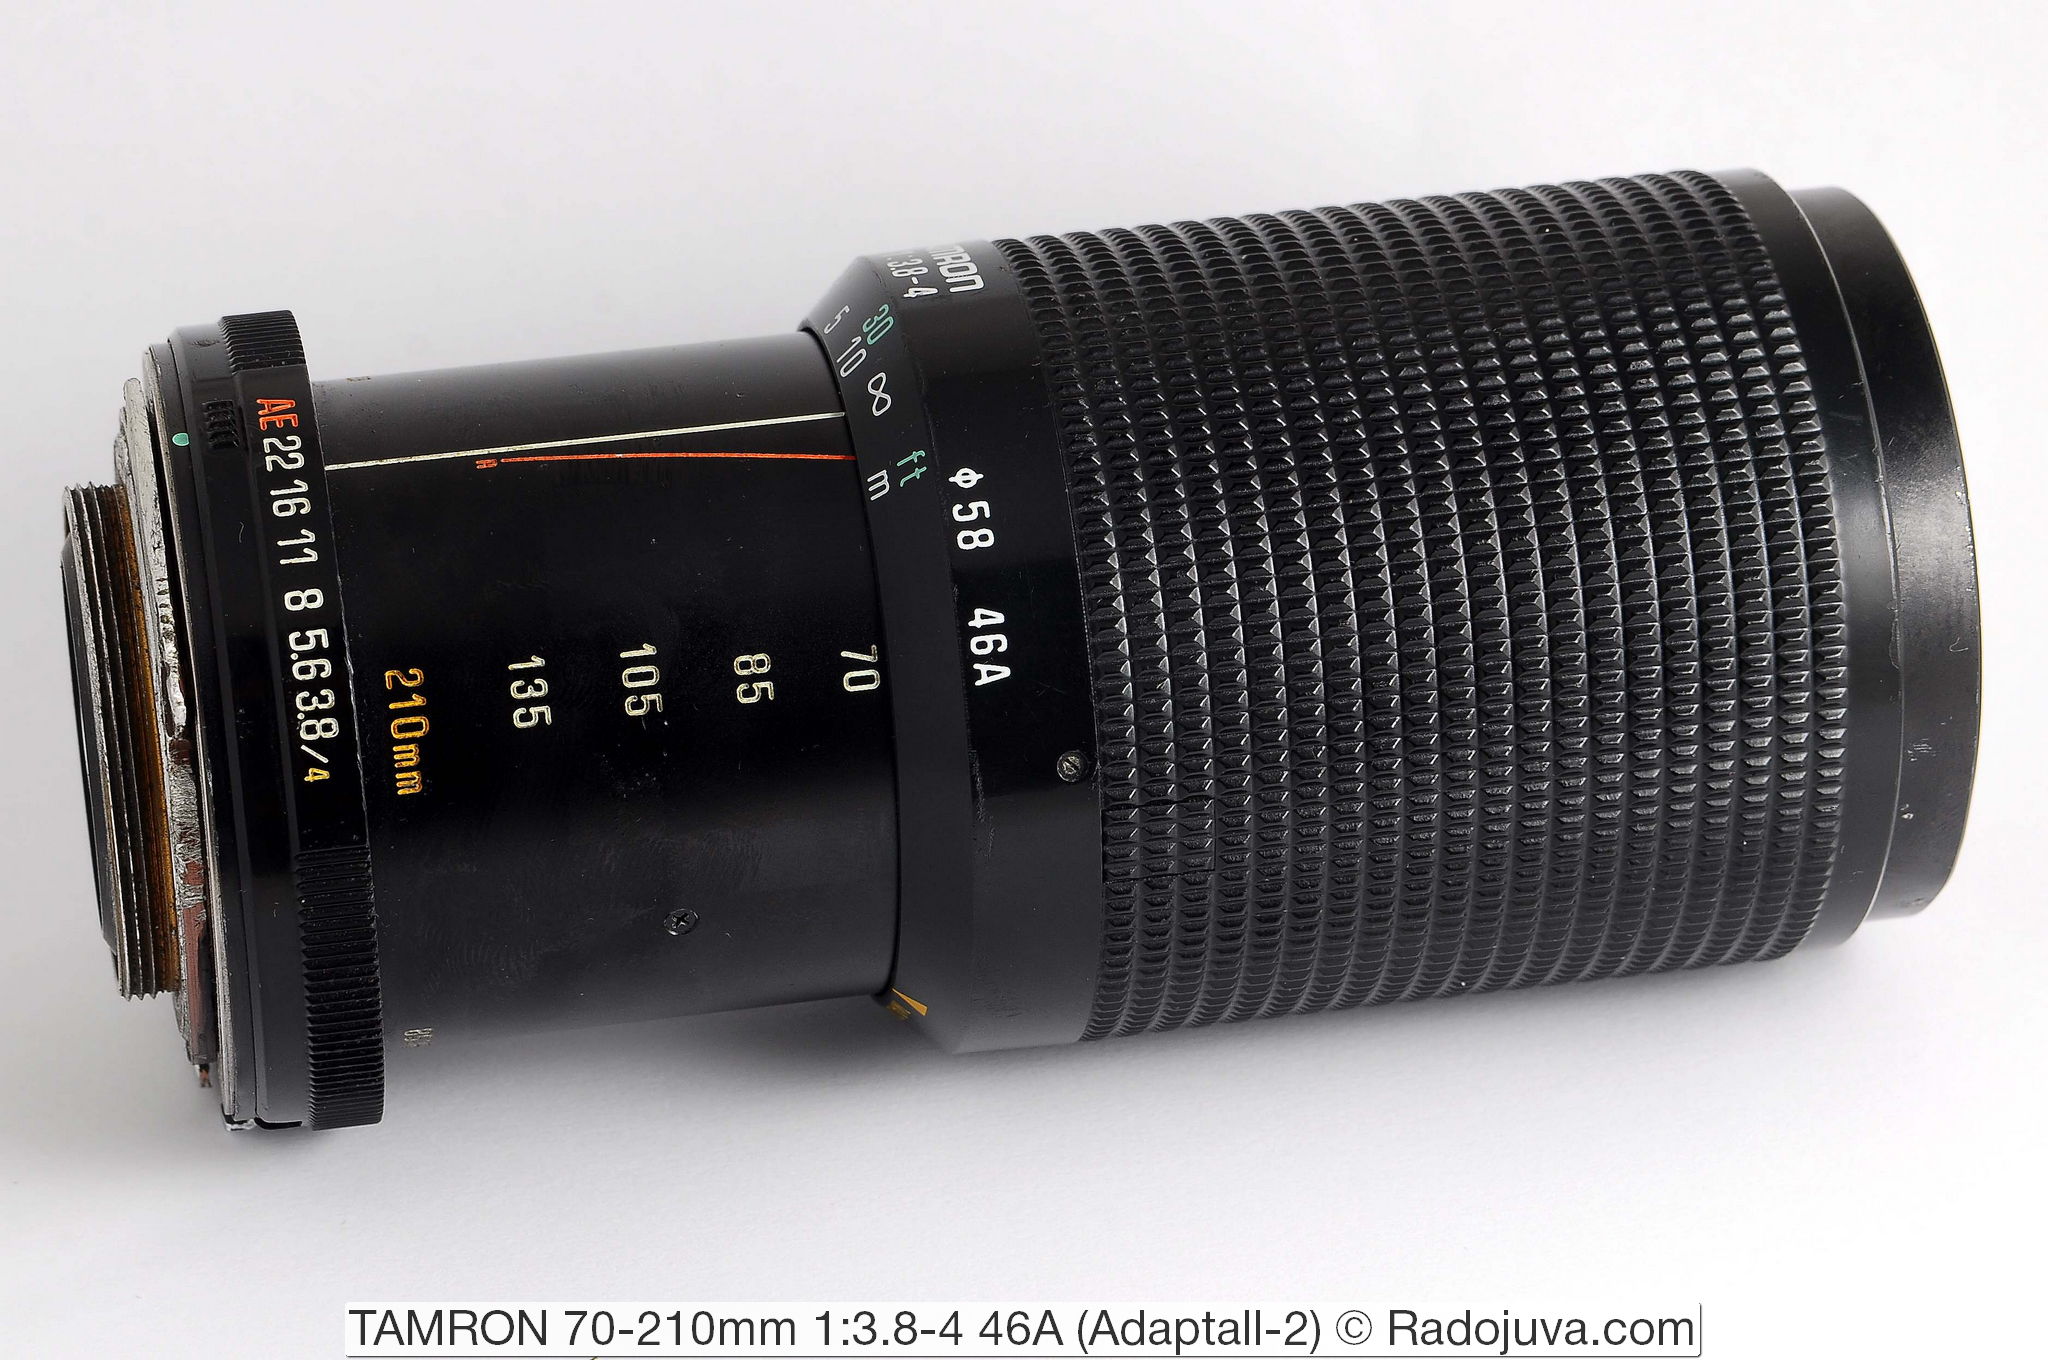 TAMRON 70-210 mm 1:3.8-4 46A (Adaptall-2)